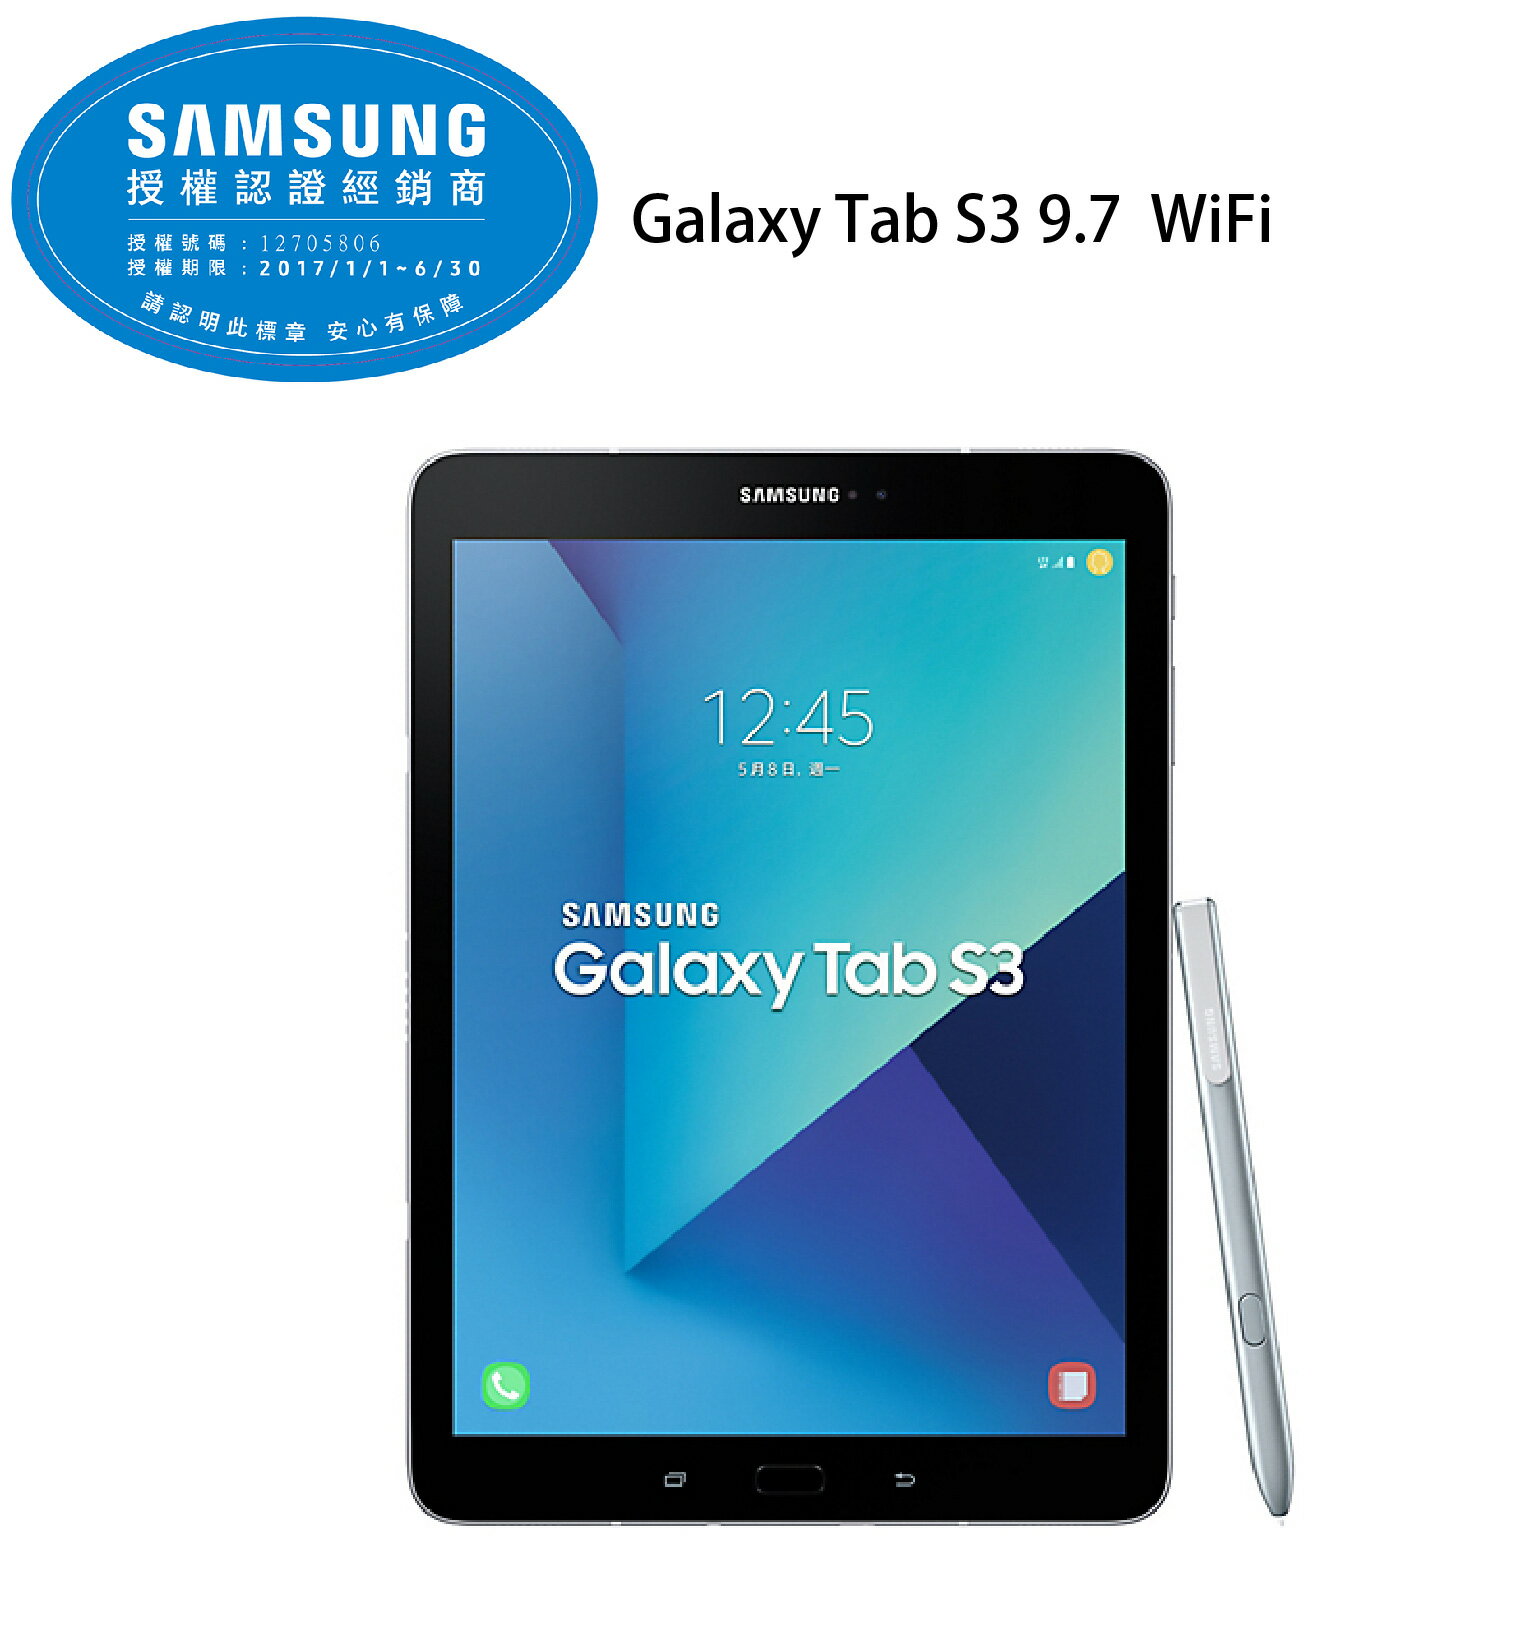  三星 Samsung GALAXY Tab S3 9.7 WiFi 平板電腦 4G/32G -銀《?盒附S Pe? 贈原廠皮套》 最便宜